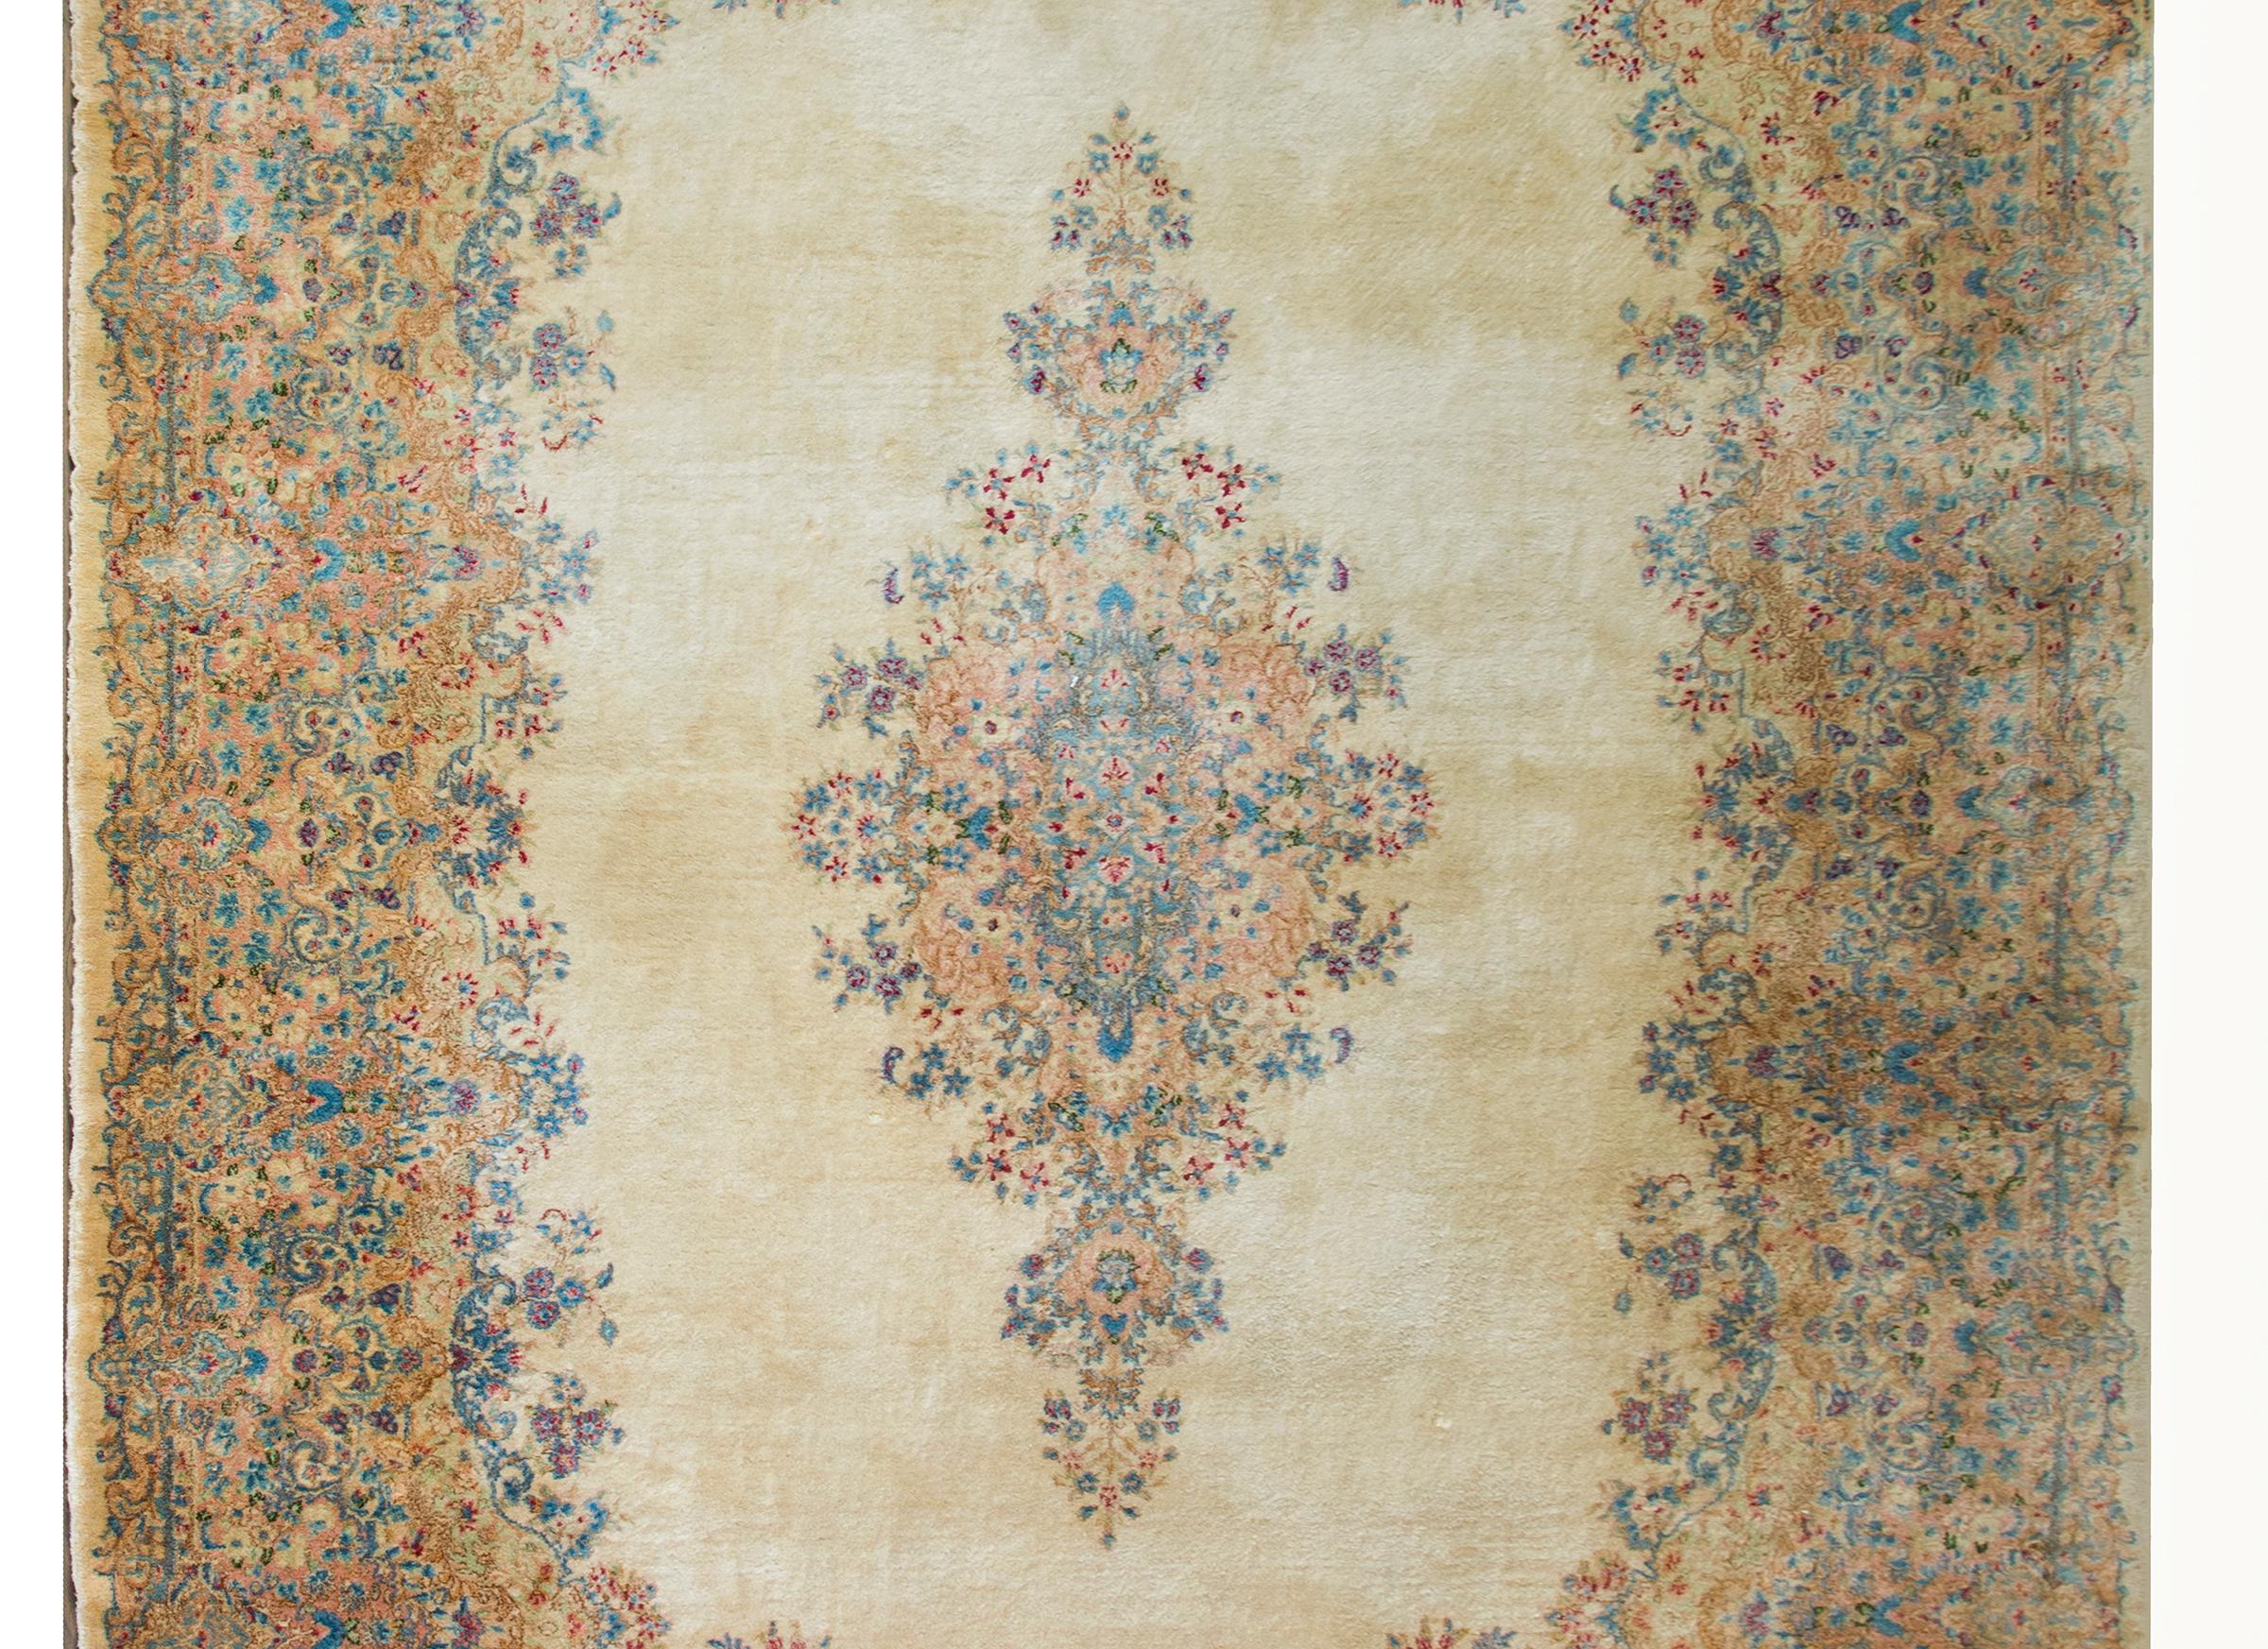 Ein schöner persischer Kirman-Teppich aus dem frühen 20. Jahrhundert mit einem großen Blumenmedaillon in der Mitte, das in Karminrot, Pfirsich, Grün sowie hellem und dunklem Indigo gewebt ist und vor einem cremefarbenen Hintergrund liegt.  Die